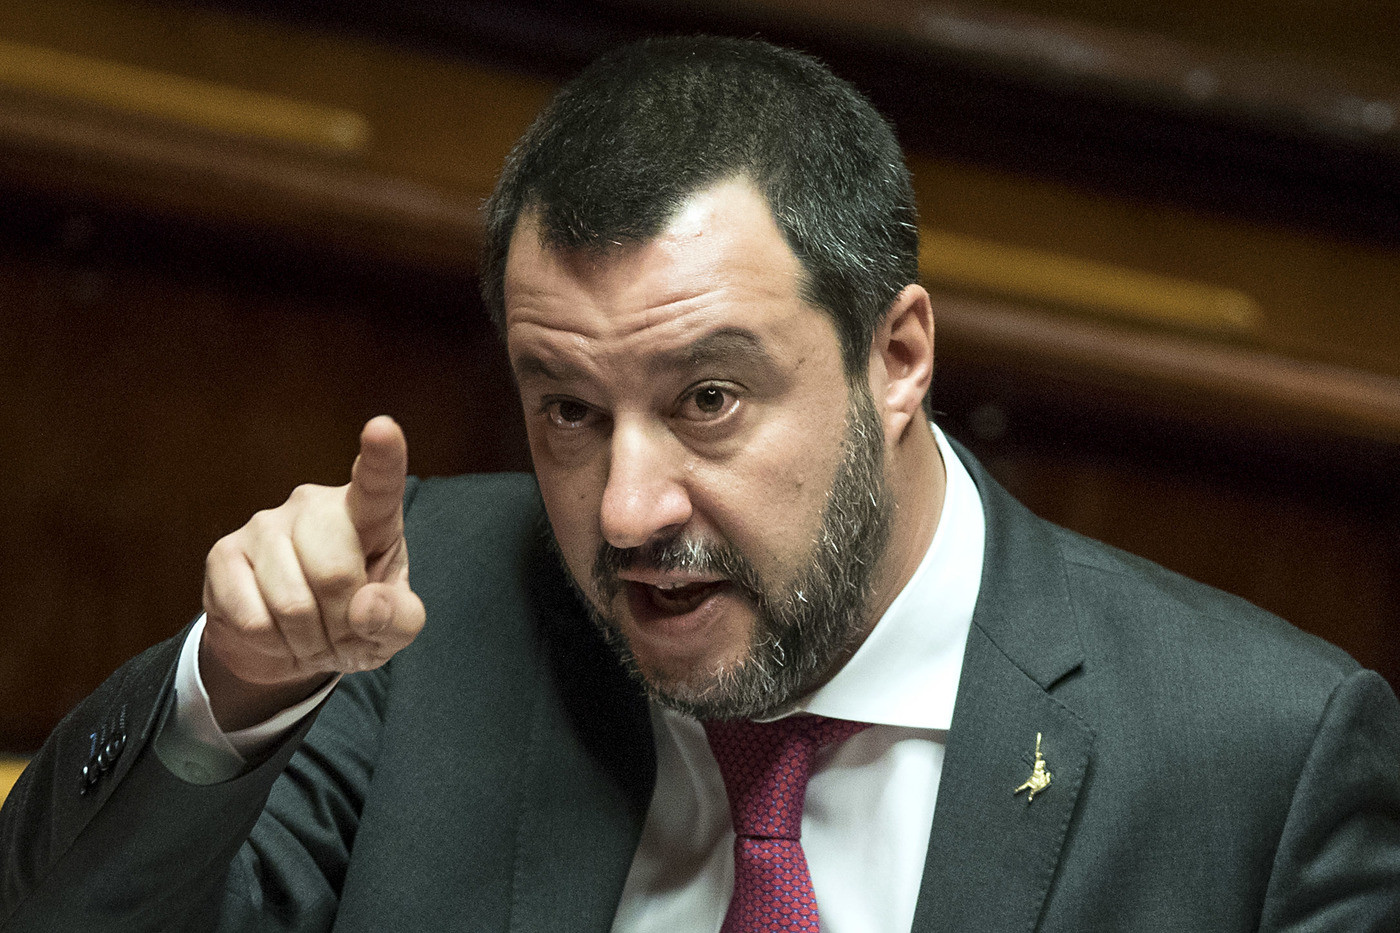 Anche Salvini attacca la Francia: “Sottrae le ricchezze all’Africa, nessuna lezione da Macron”